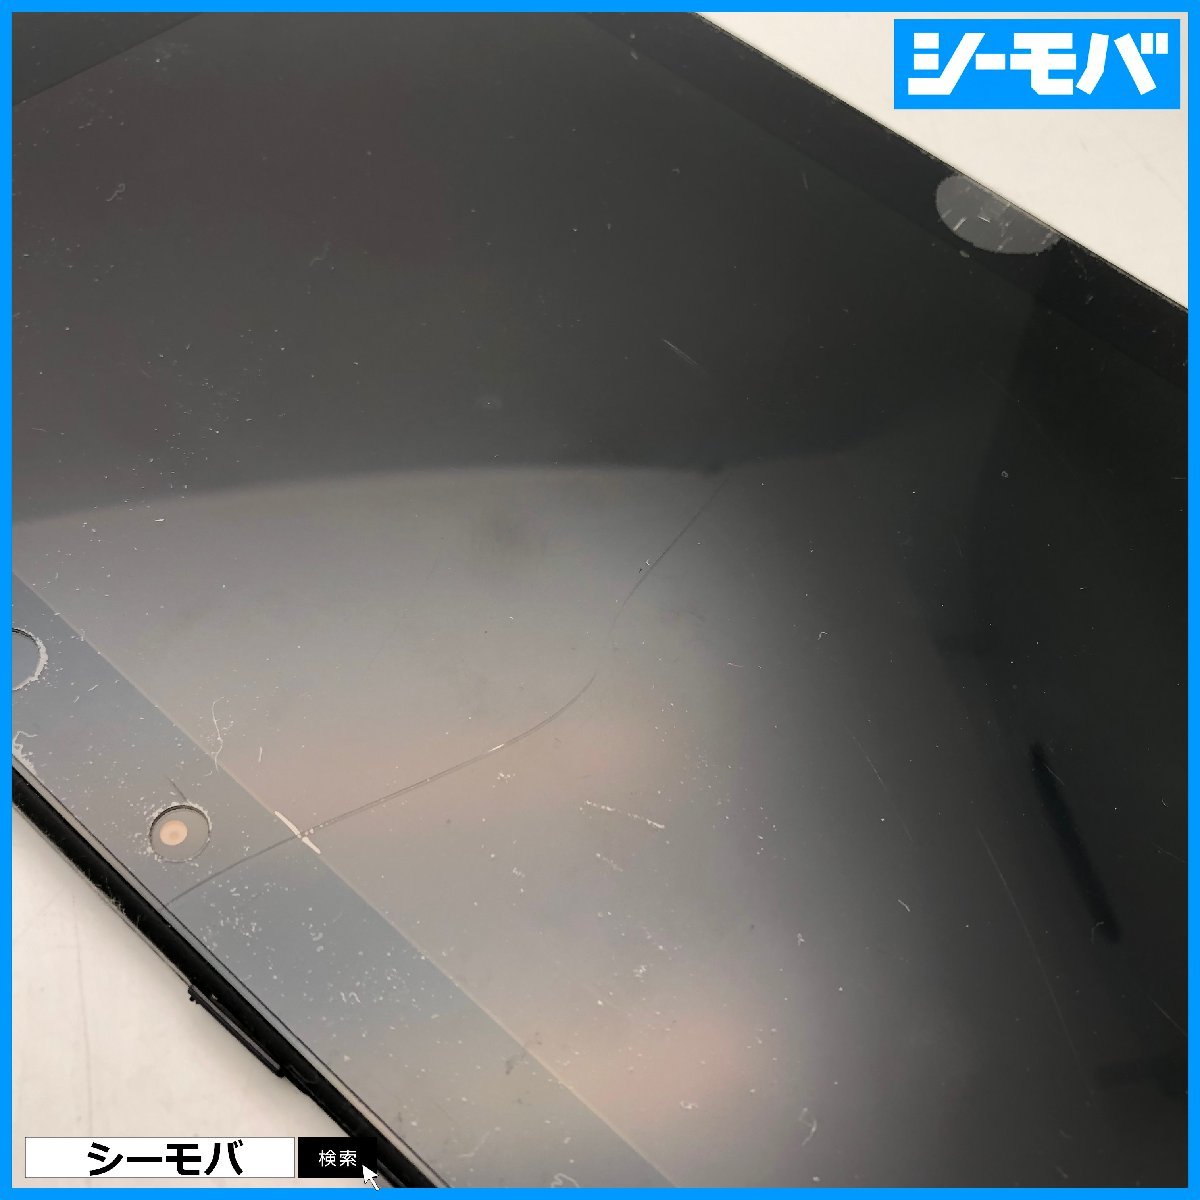 【ジャンク通電リセット済】au Xperia Z2 Tablet SOT21エクスペリア タブレット android アンドロイド 画面割れ 本体破損 RUUN13776の画像5